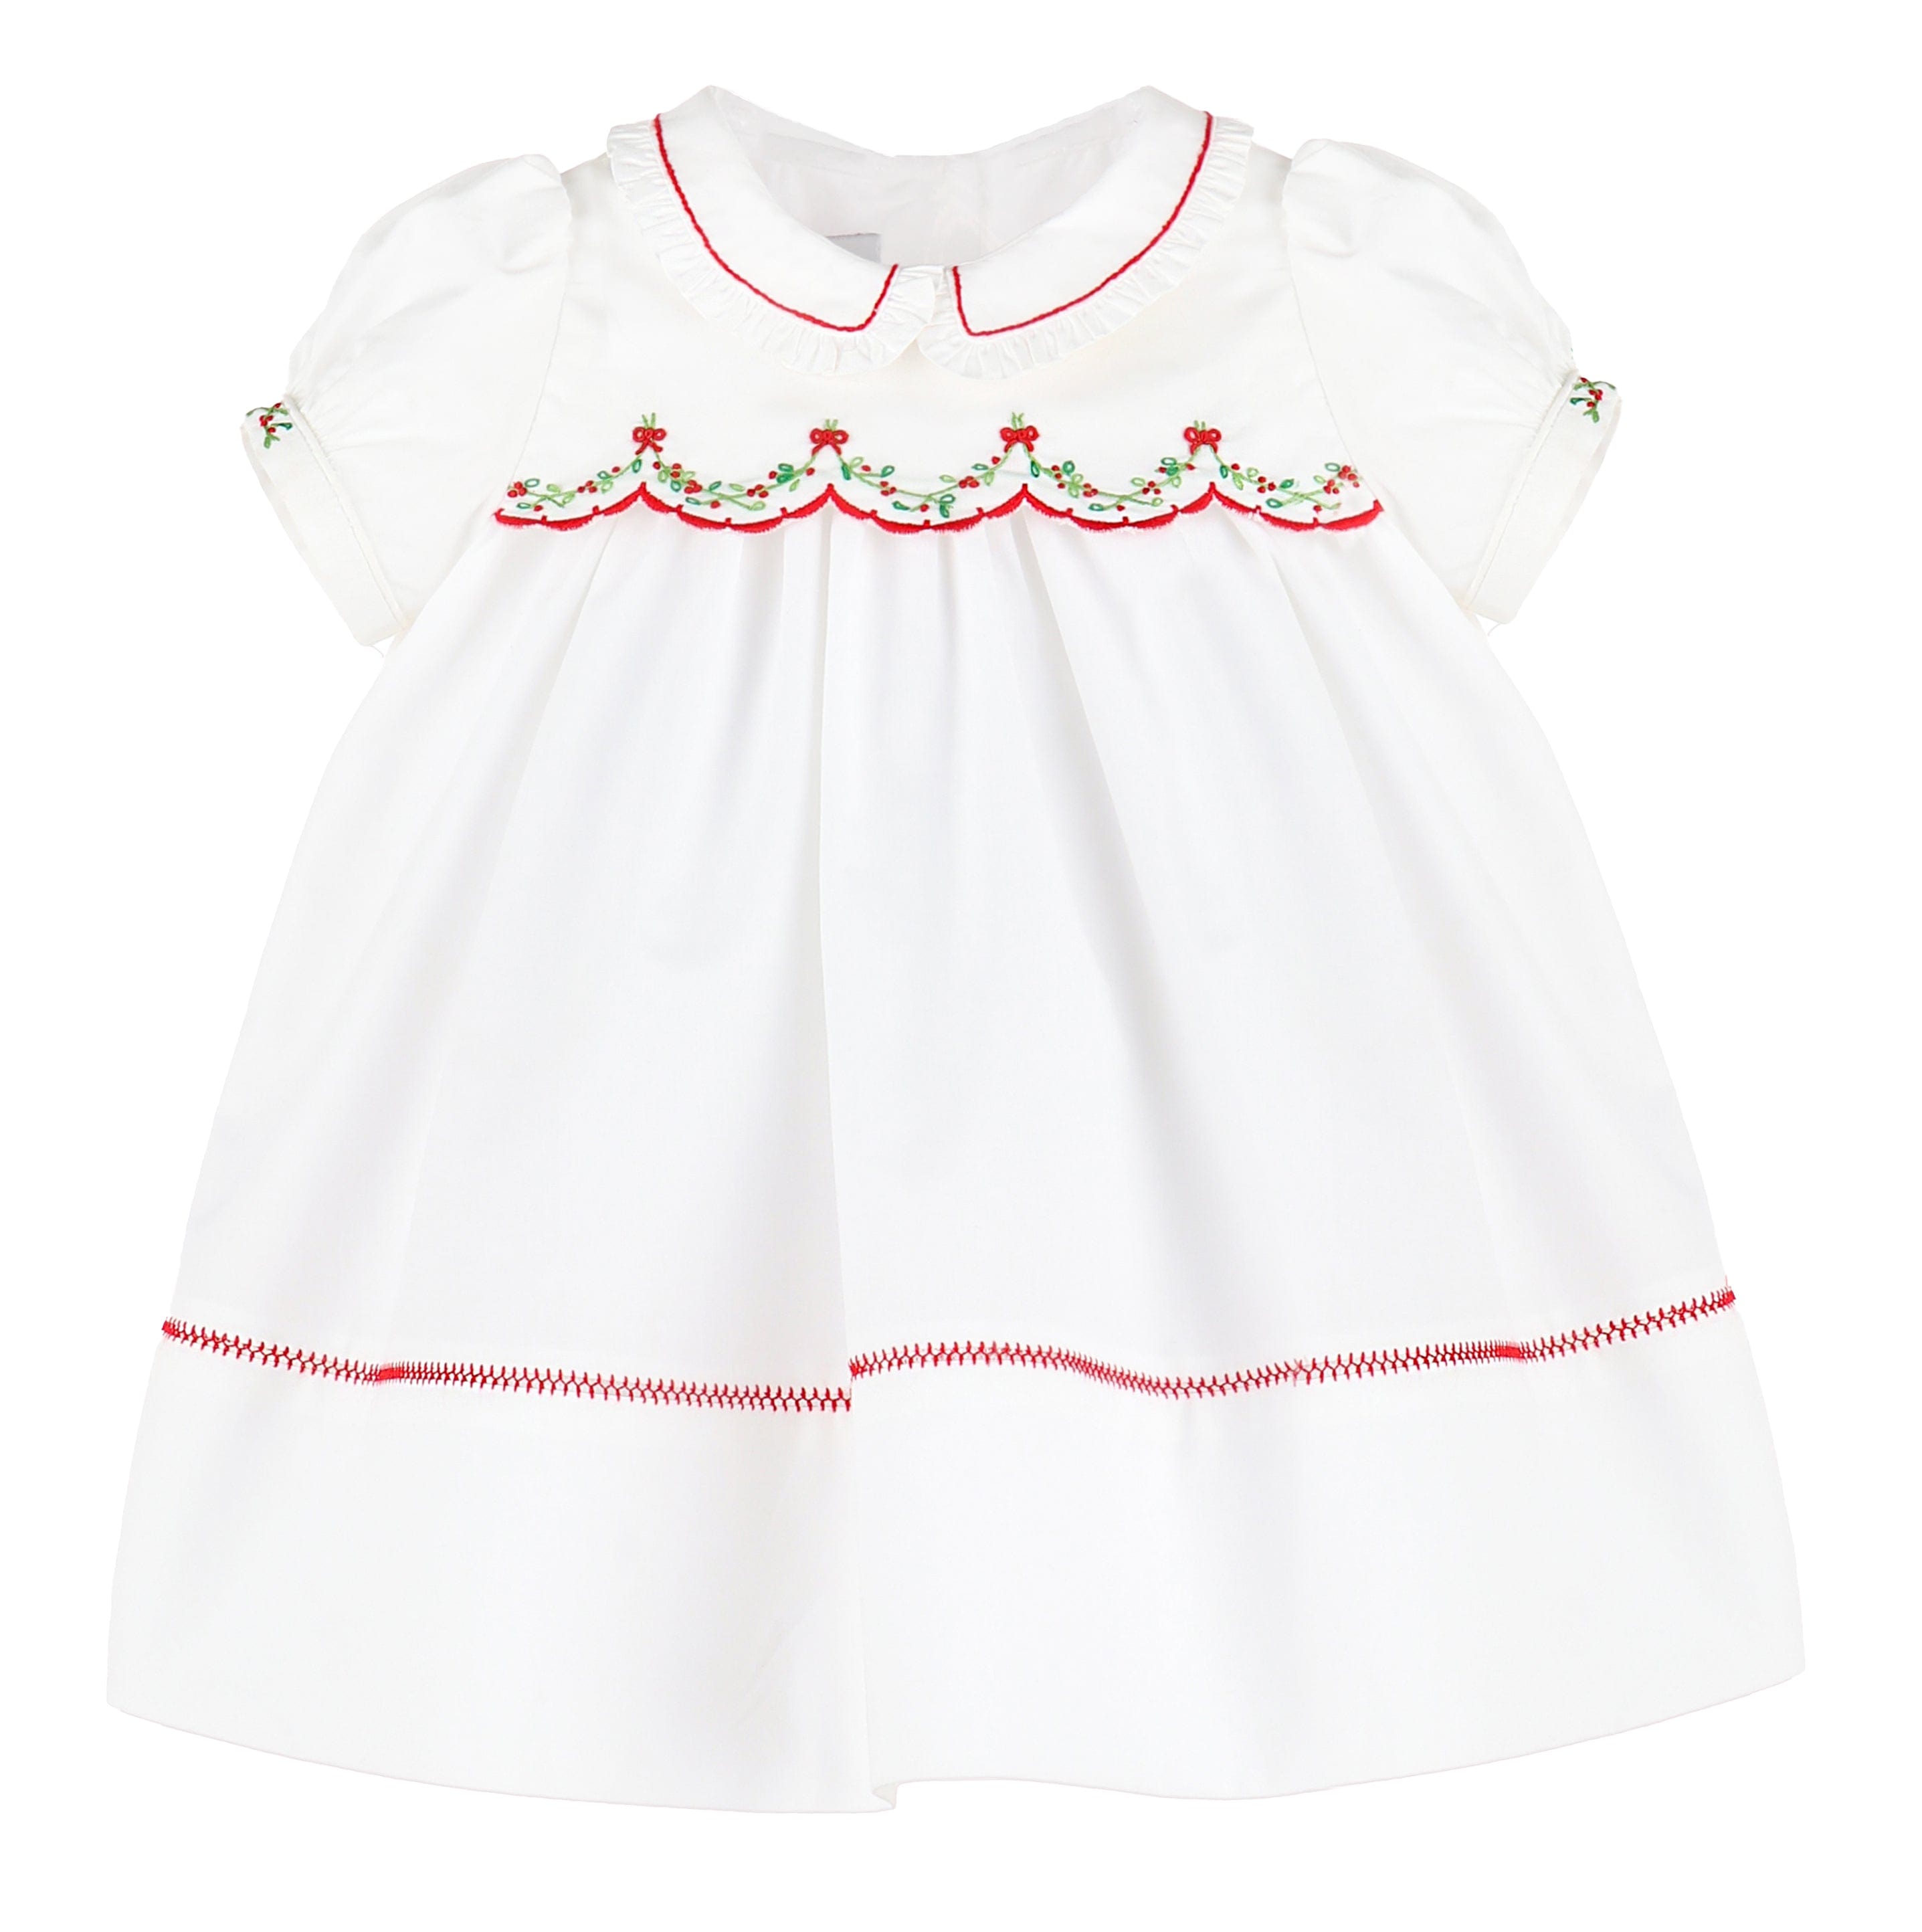 C&A - Casero & Associates Casero & Associates Merry Maker Scallop Dress - Little Miss Muffin Children & Home